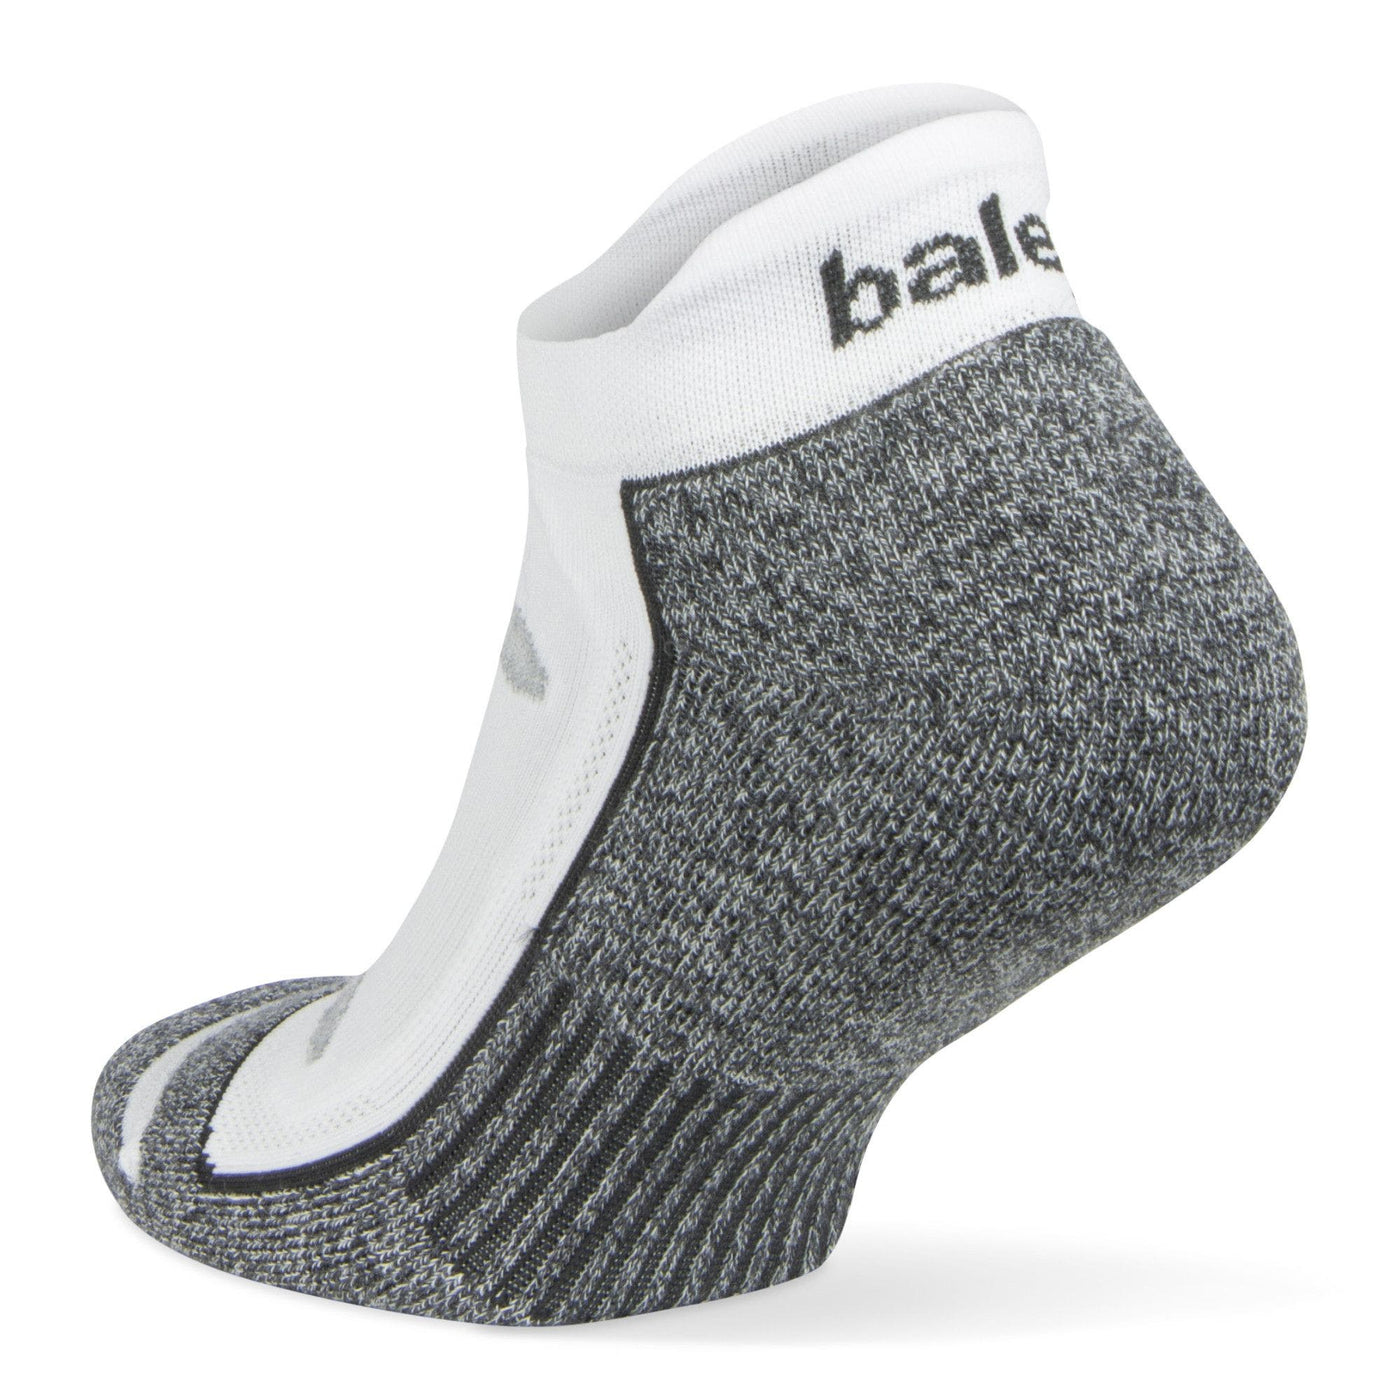 Balega Blister Resist No Show Tab Socks - 8706-0200